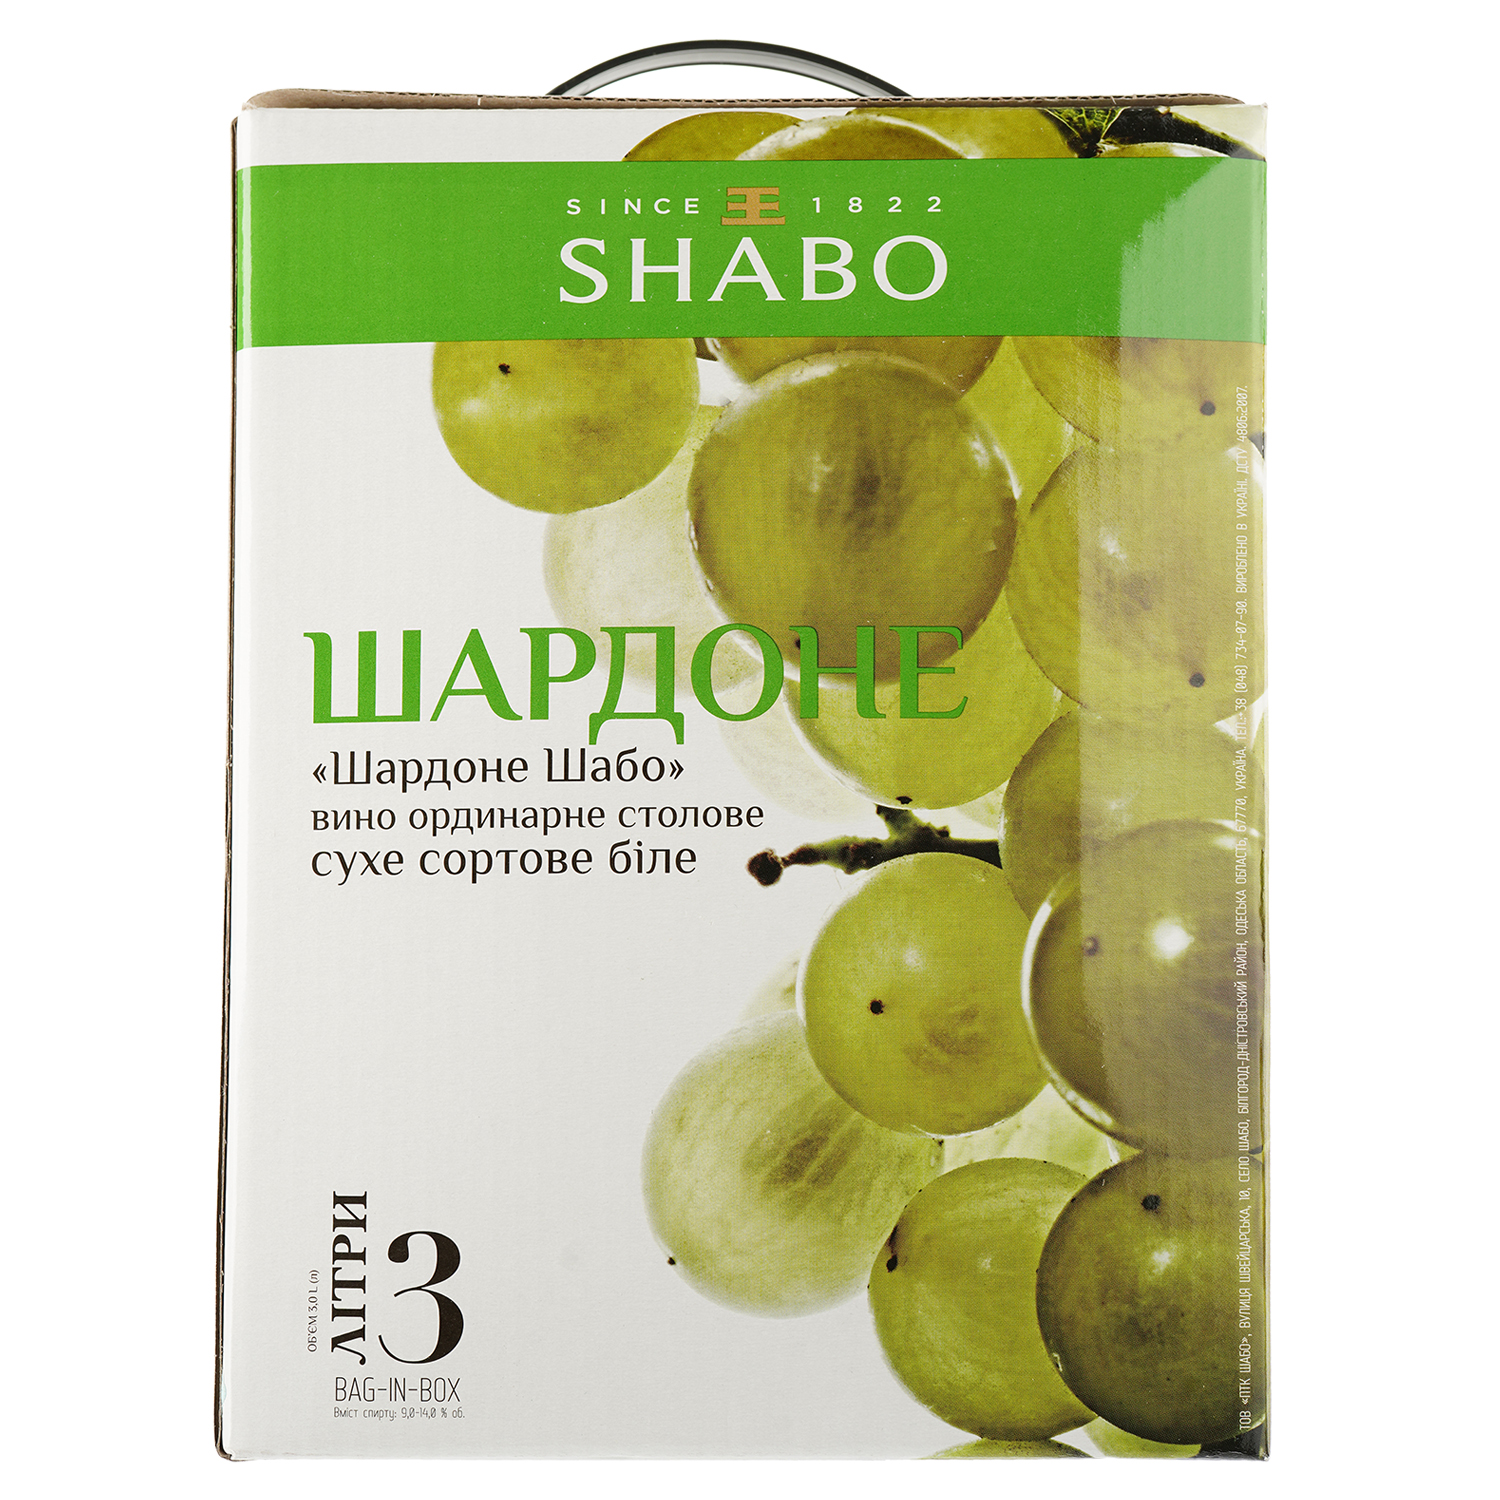 Вино Shabo Шардоне, біле, сухе, Bag-in-Box, 9,5-14%, 3 л - фото 2